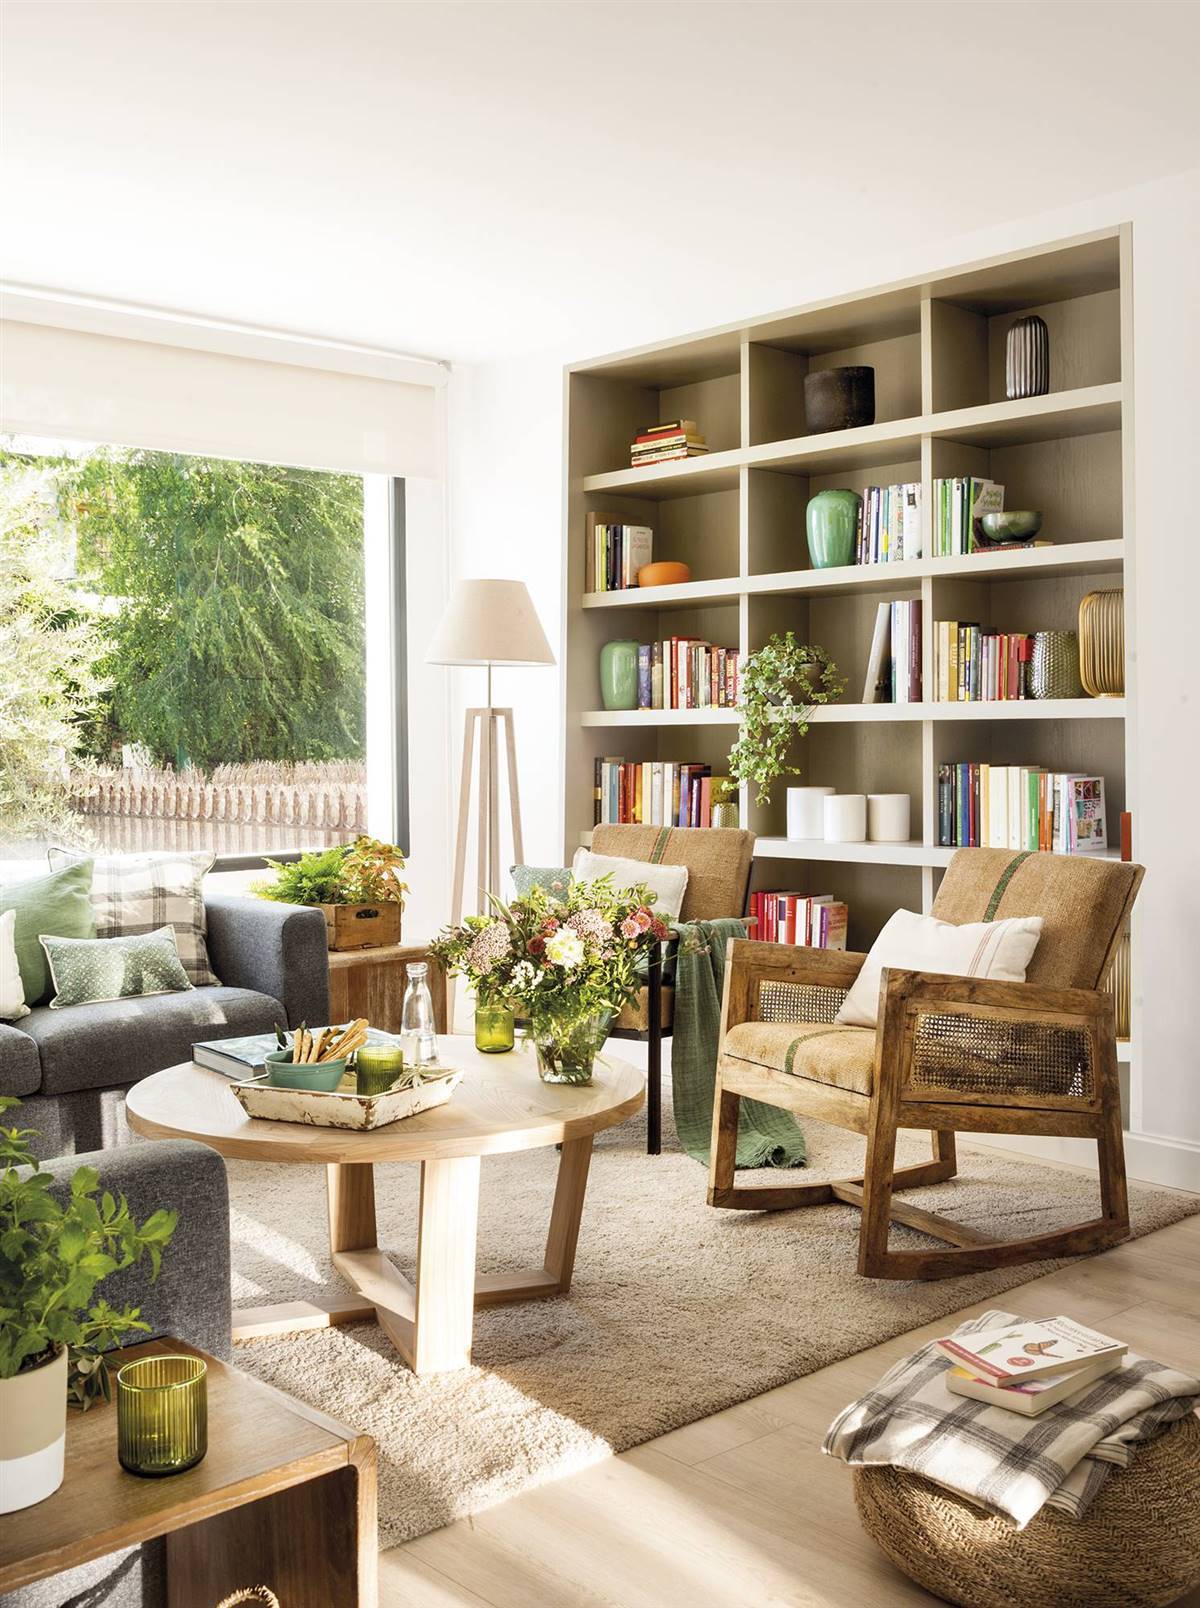 Salón con librería empotrada, butacas de madera, alfombra de pelo corto y mesa de centro de madera 00489030 ff2fad5e 1200x1608